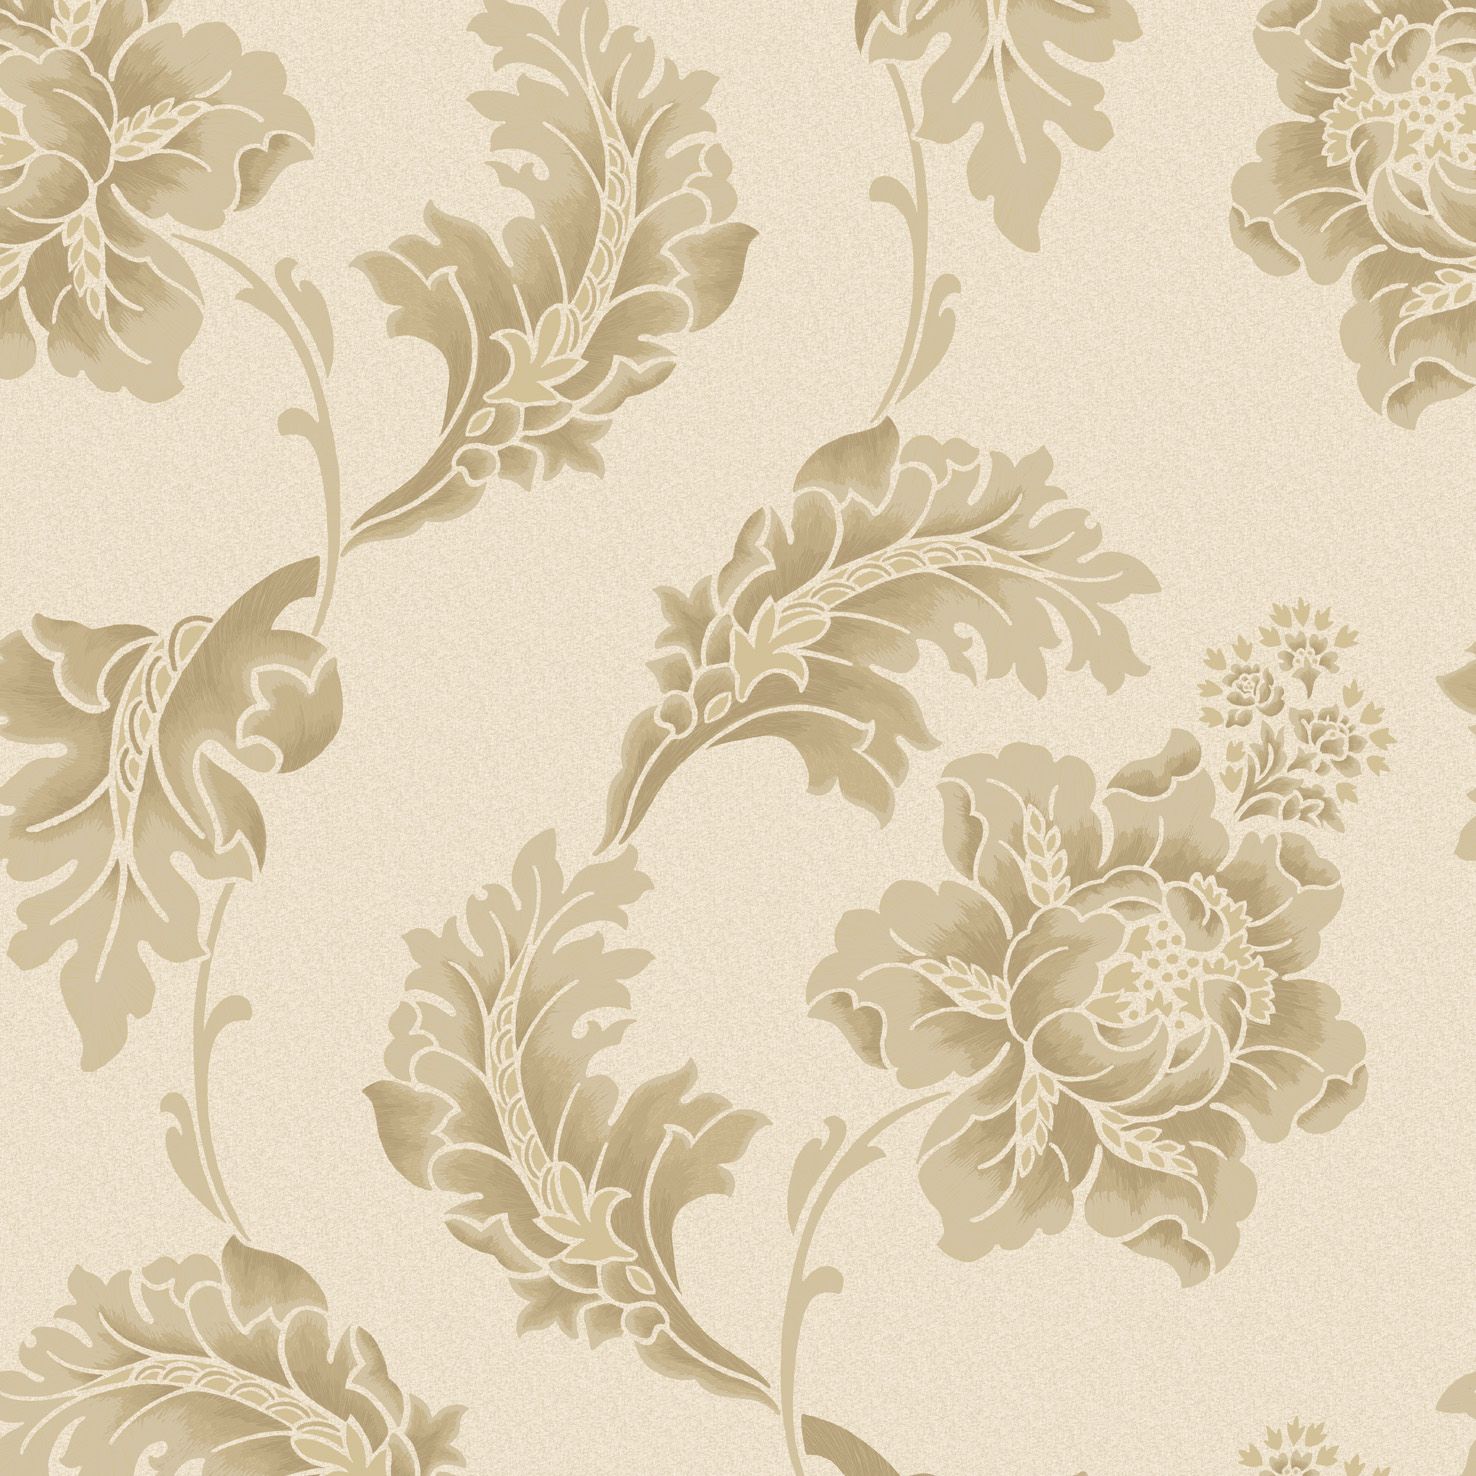 Beige floral wallpaper